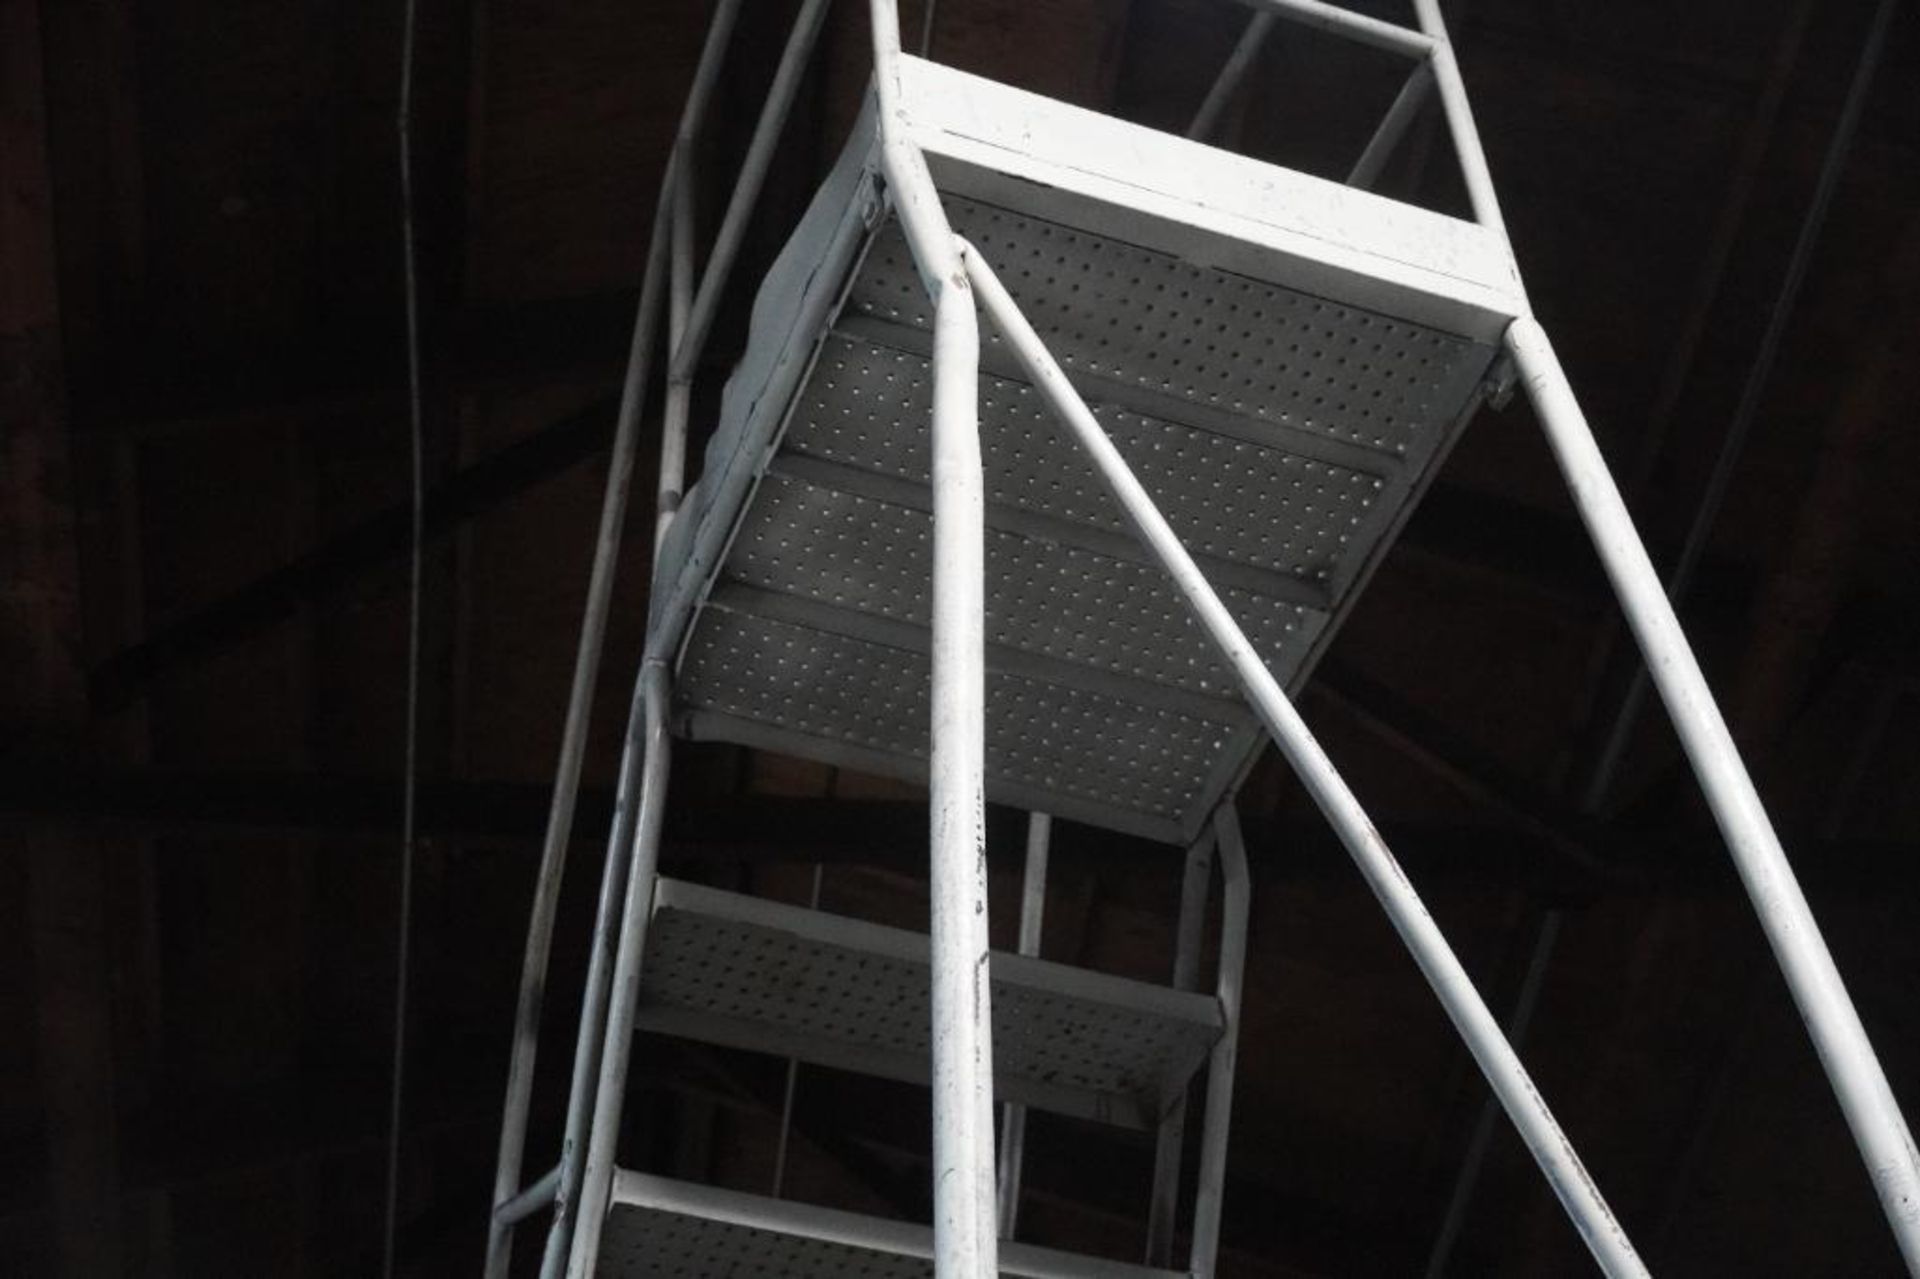 16 Step Safety Ladder - Image 6 of 7